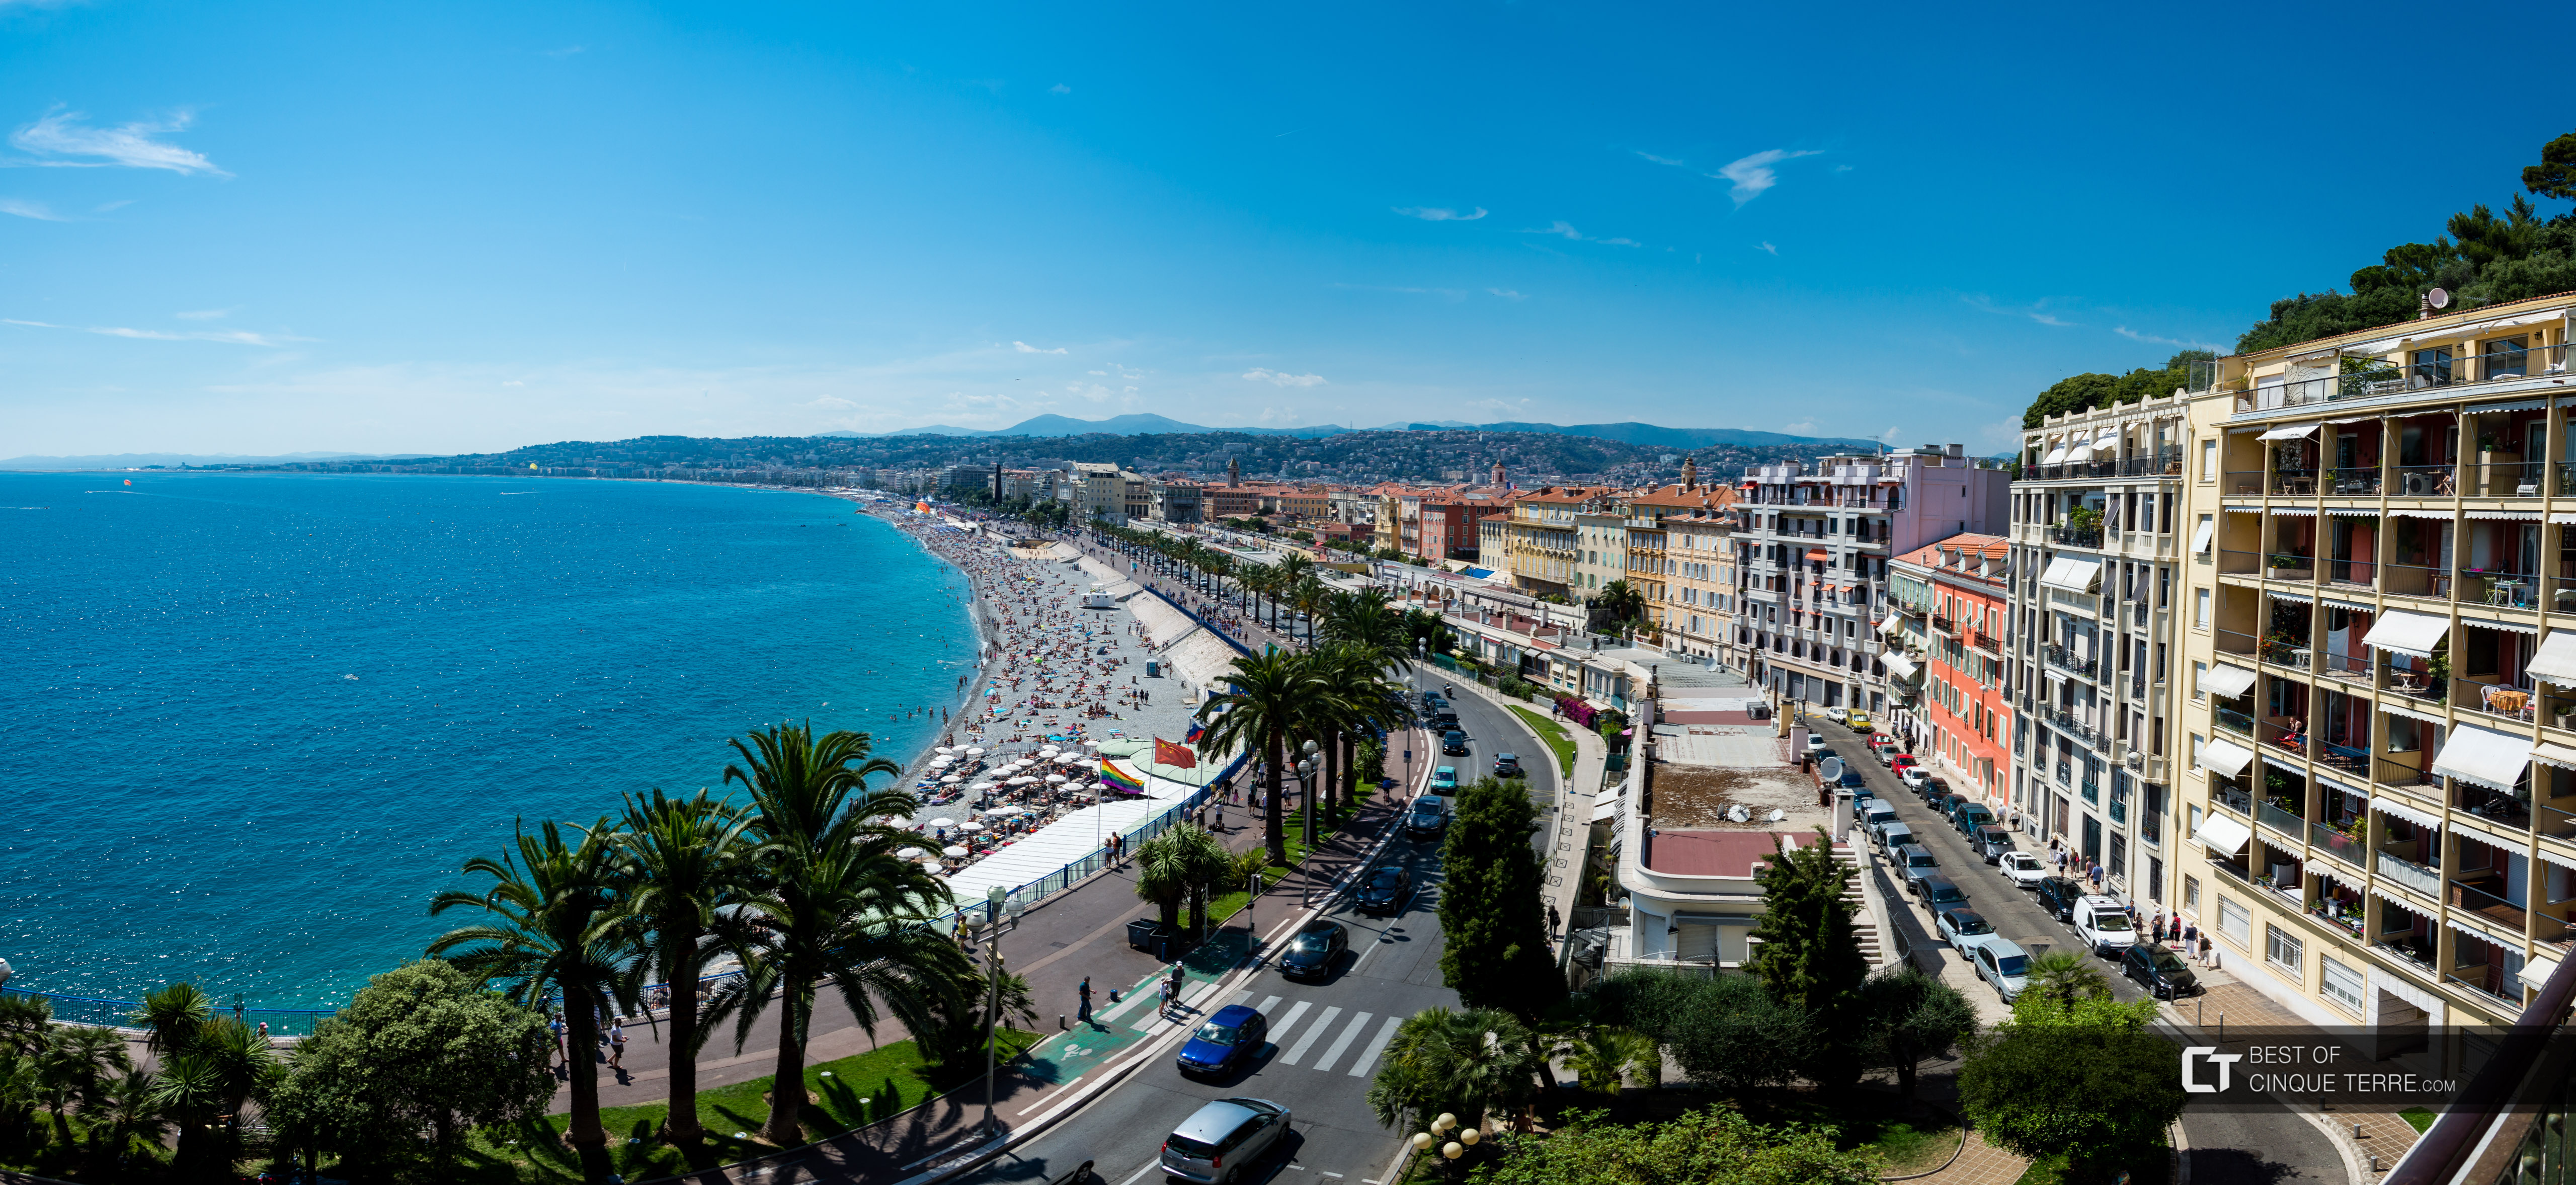 Promenade des Anglais desde el punto panorámico de la Colina del Castillo, Niza, Francia